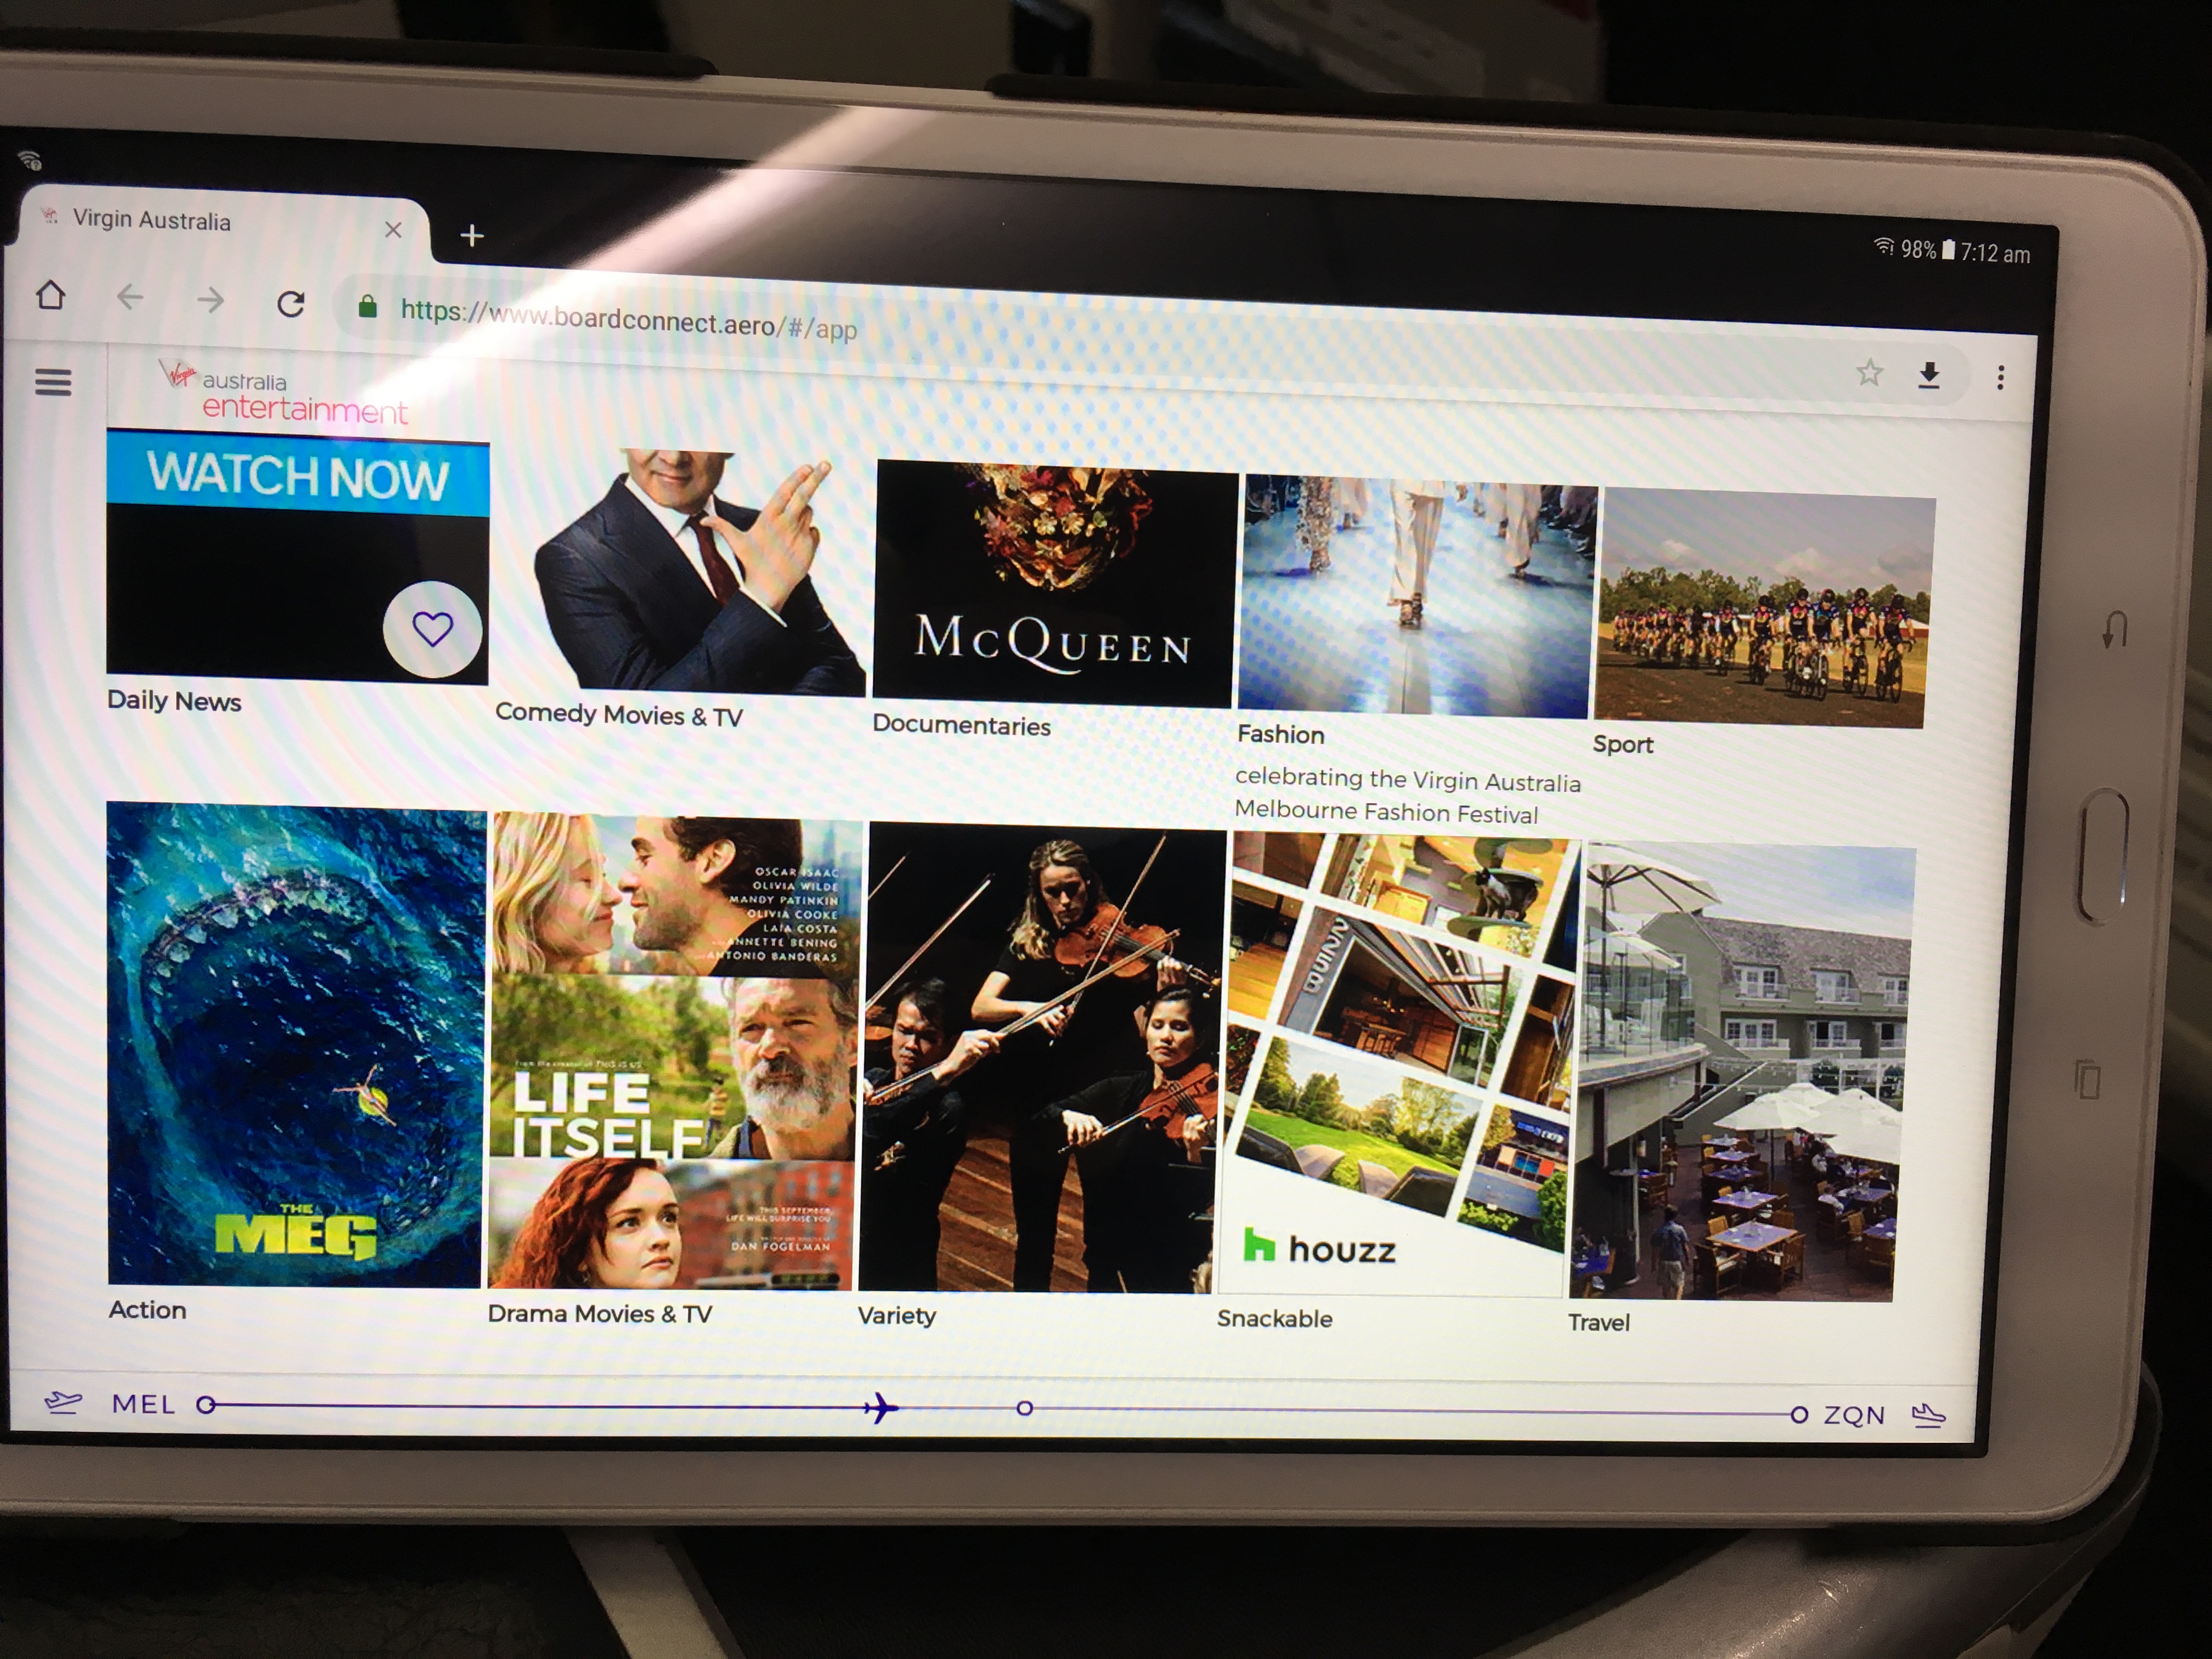 Virgin Australia Business Class inflight entertainment tablet